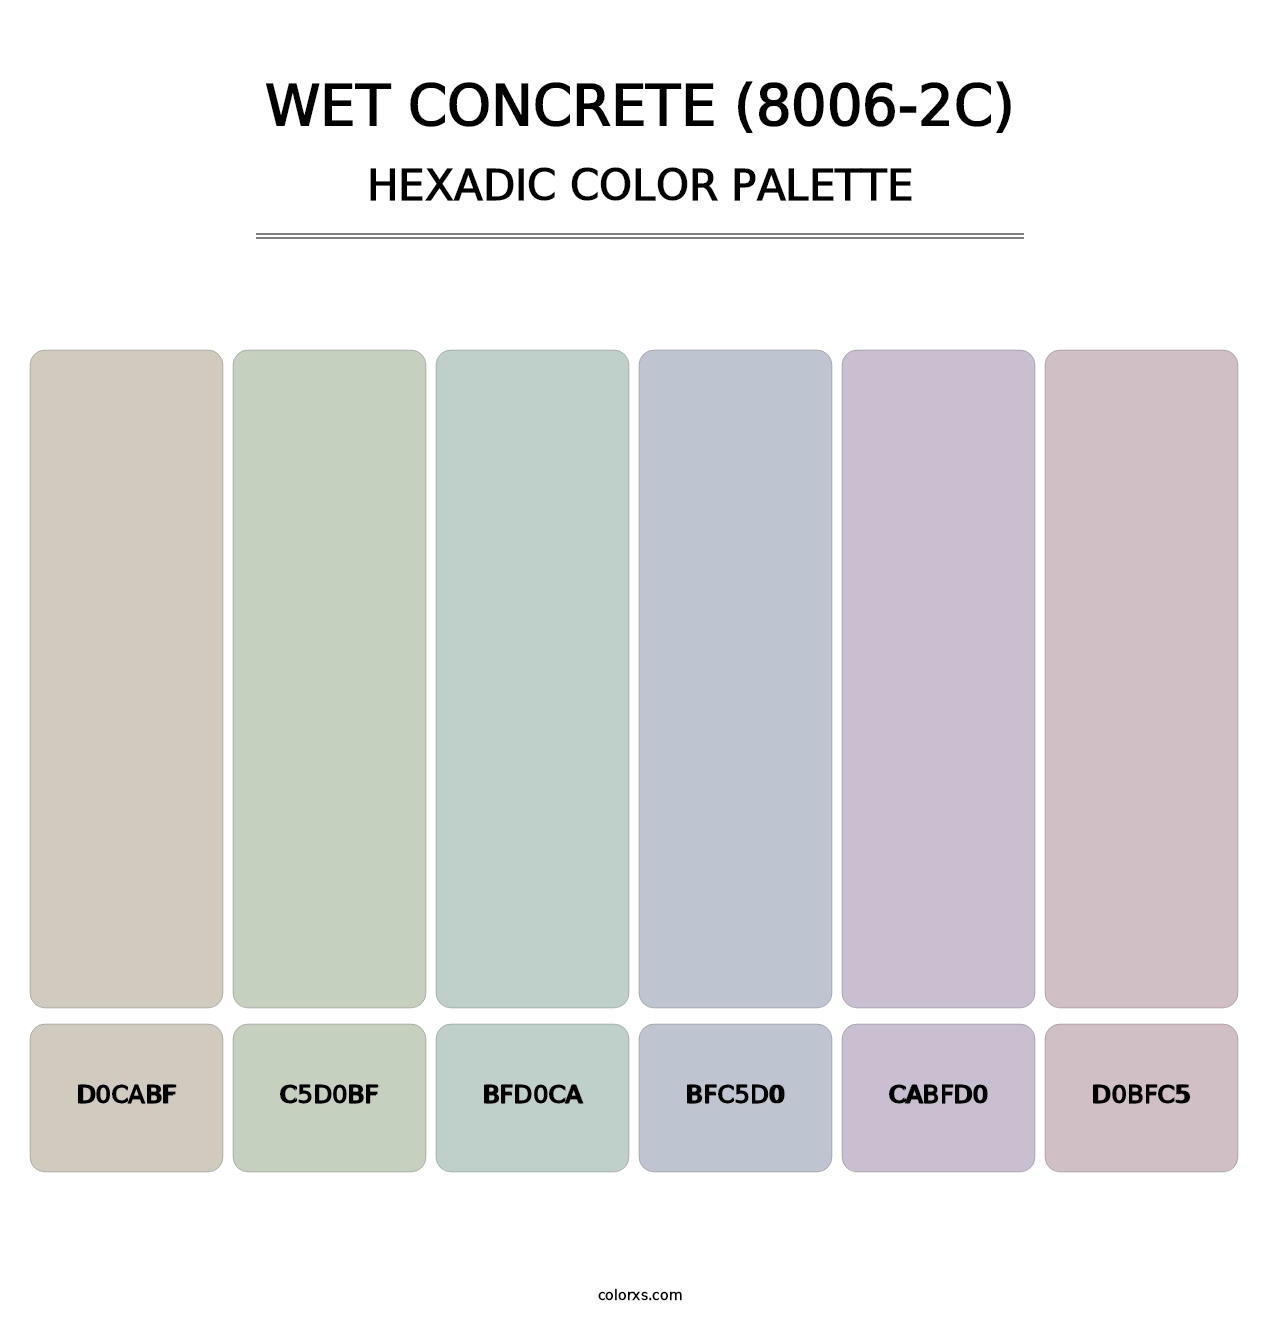 Wet Concrete (8006-2C) - Hexadic Color Palette